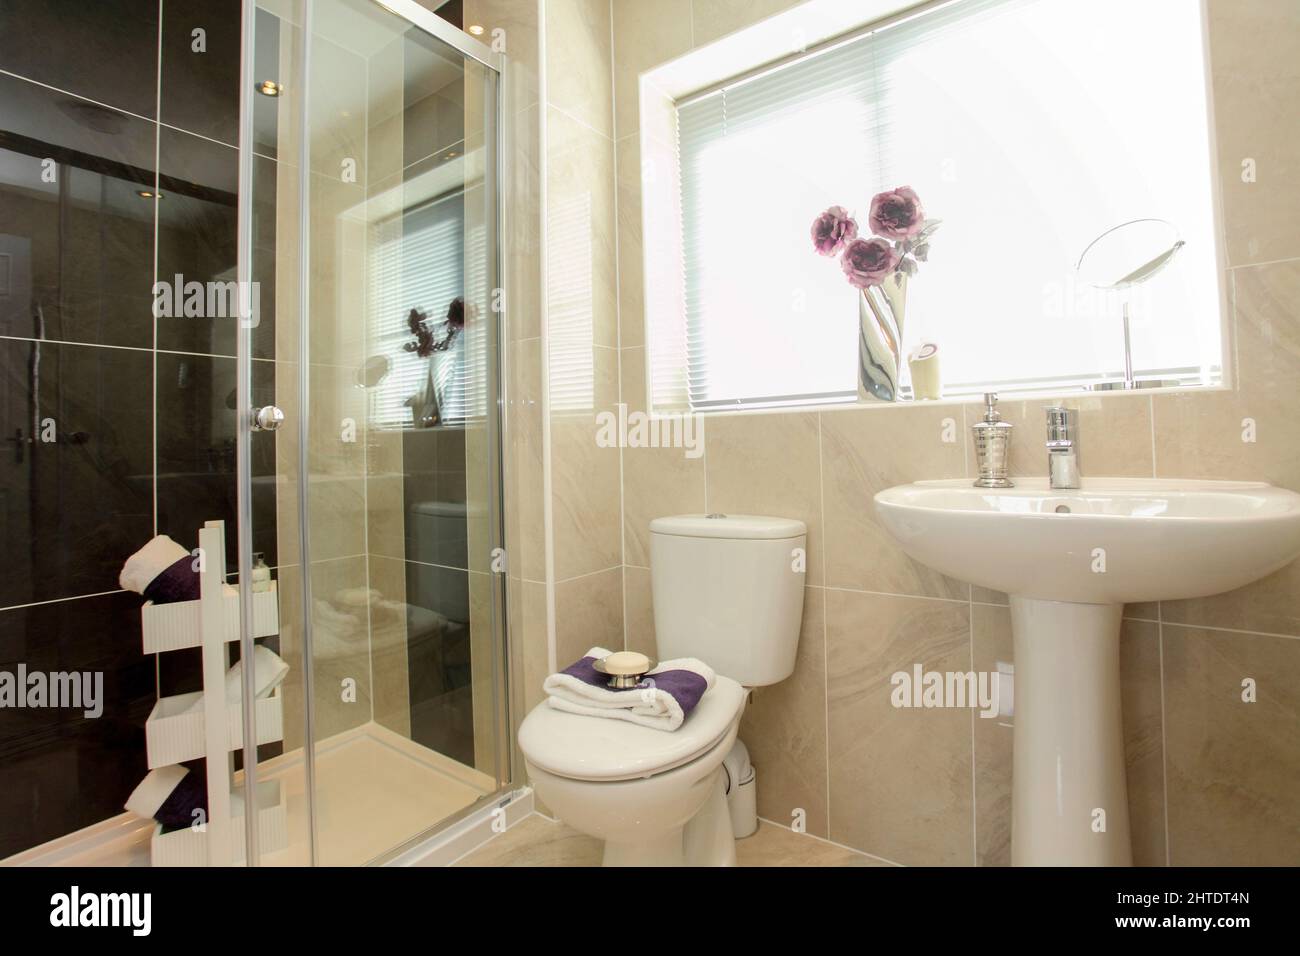 Salle de bains moderne dans nouvelle maison de construction, toilettes, douche, lavabo, simple, carrelage, coloris beige gris blanc. Banque D'Images